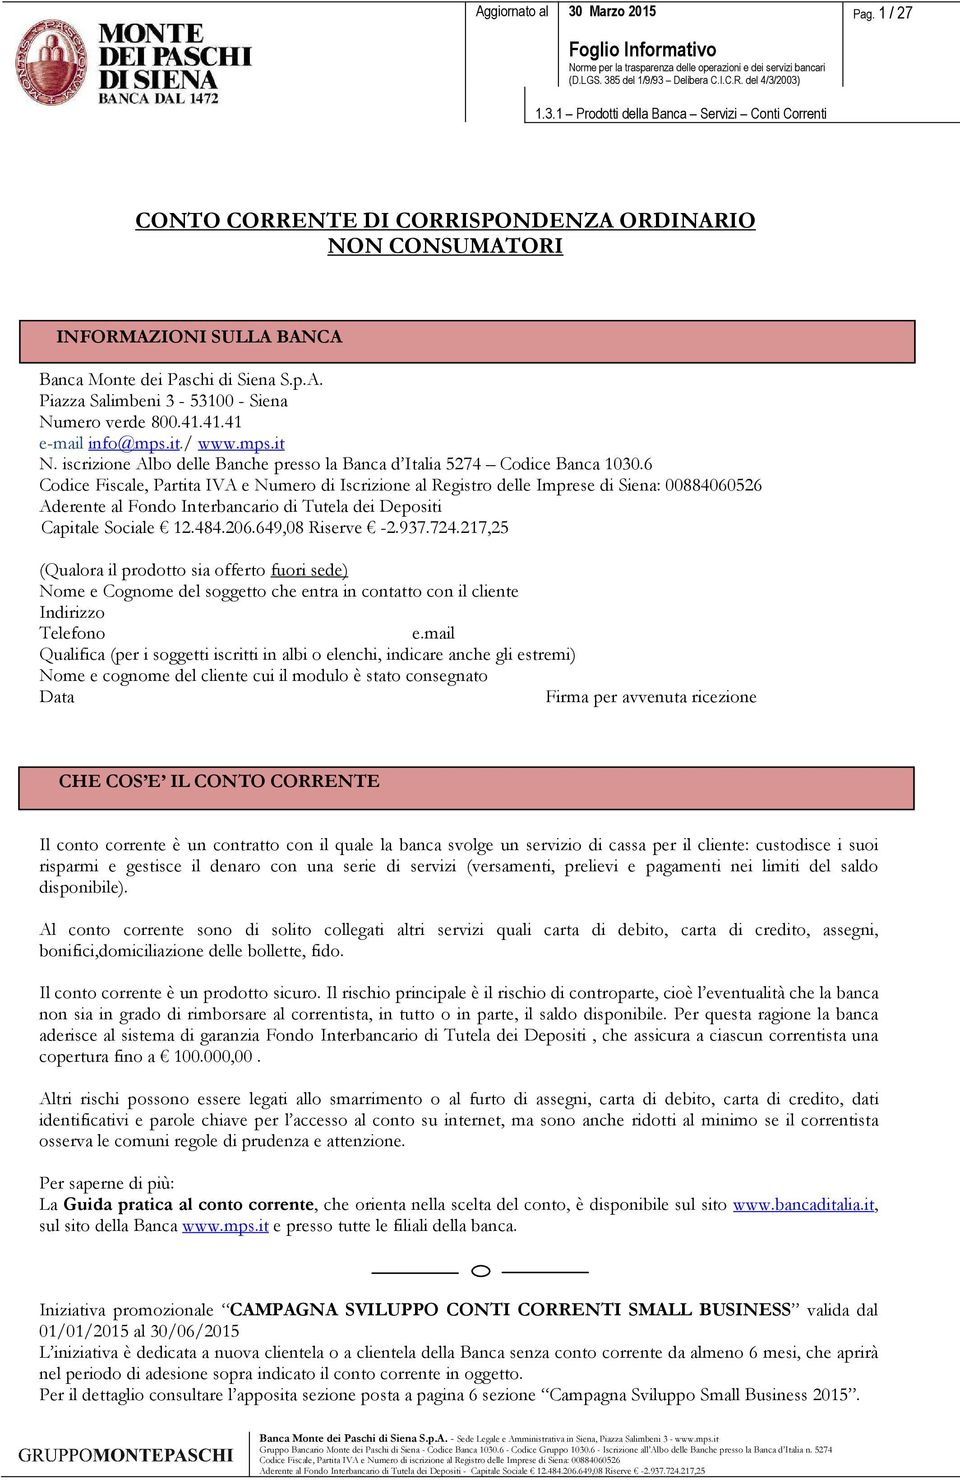 6 Codice Fiscale, Partita IVA e Numero di Iscrizione al Registro delle Imprese di Siena: 00884060526 Aderente al Fondo Interbancario di Tutela dei Depositi Capitale Sociale 12.484.206.